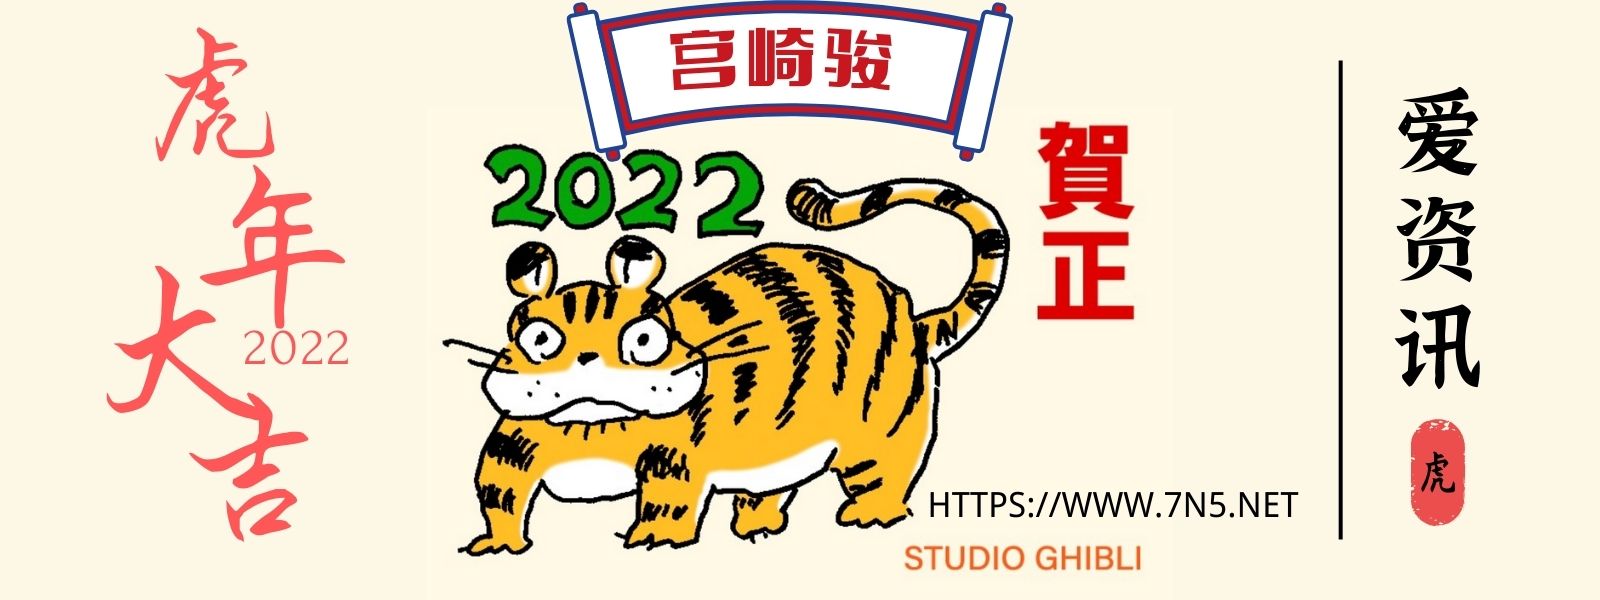 宫崎骏恭贺2022年 新年绘虎-N5次元